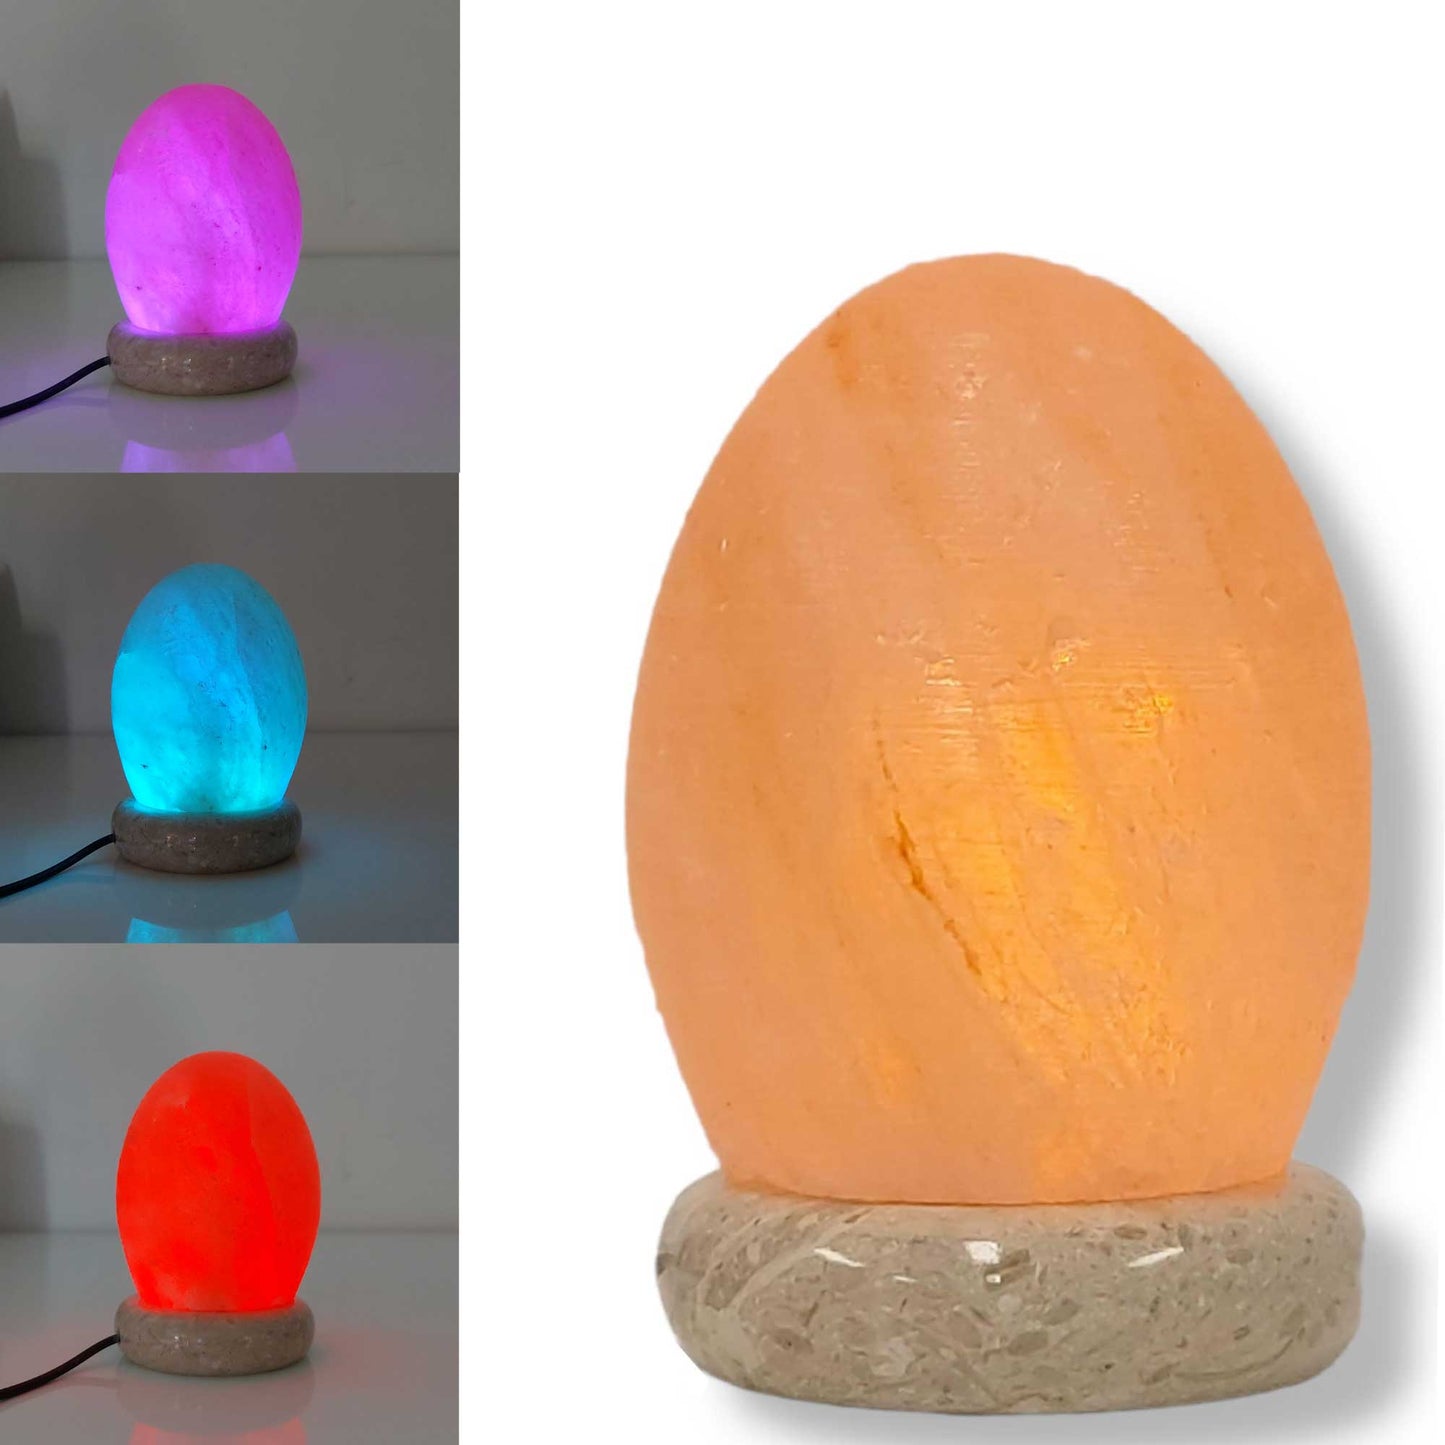 USB Colour Changing Egg Shape Himalayan Pink Salt Lamp Color Change LED Light